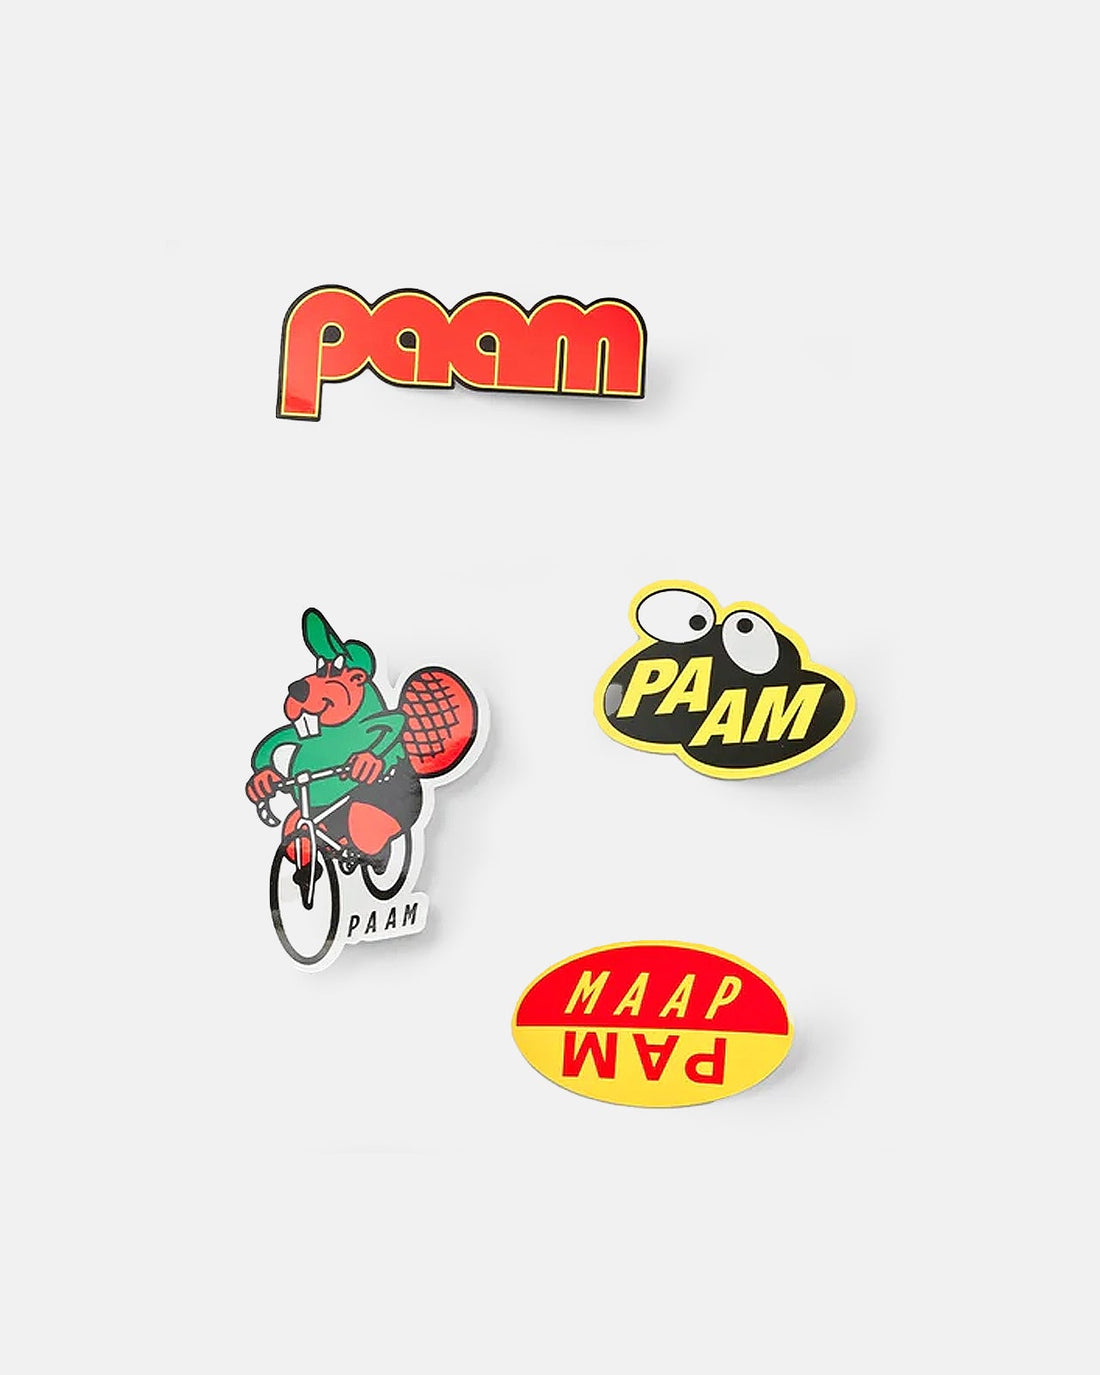 X PAM Sticker Pack - MAAP